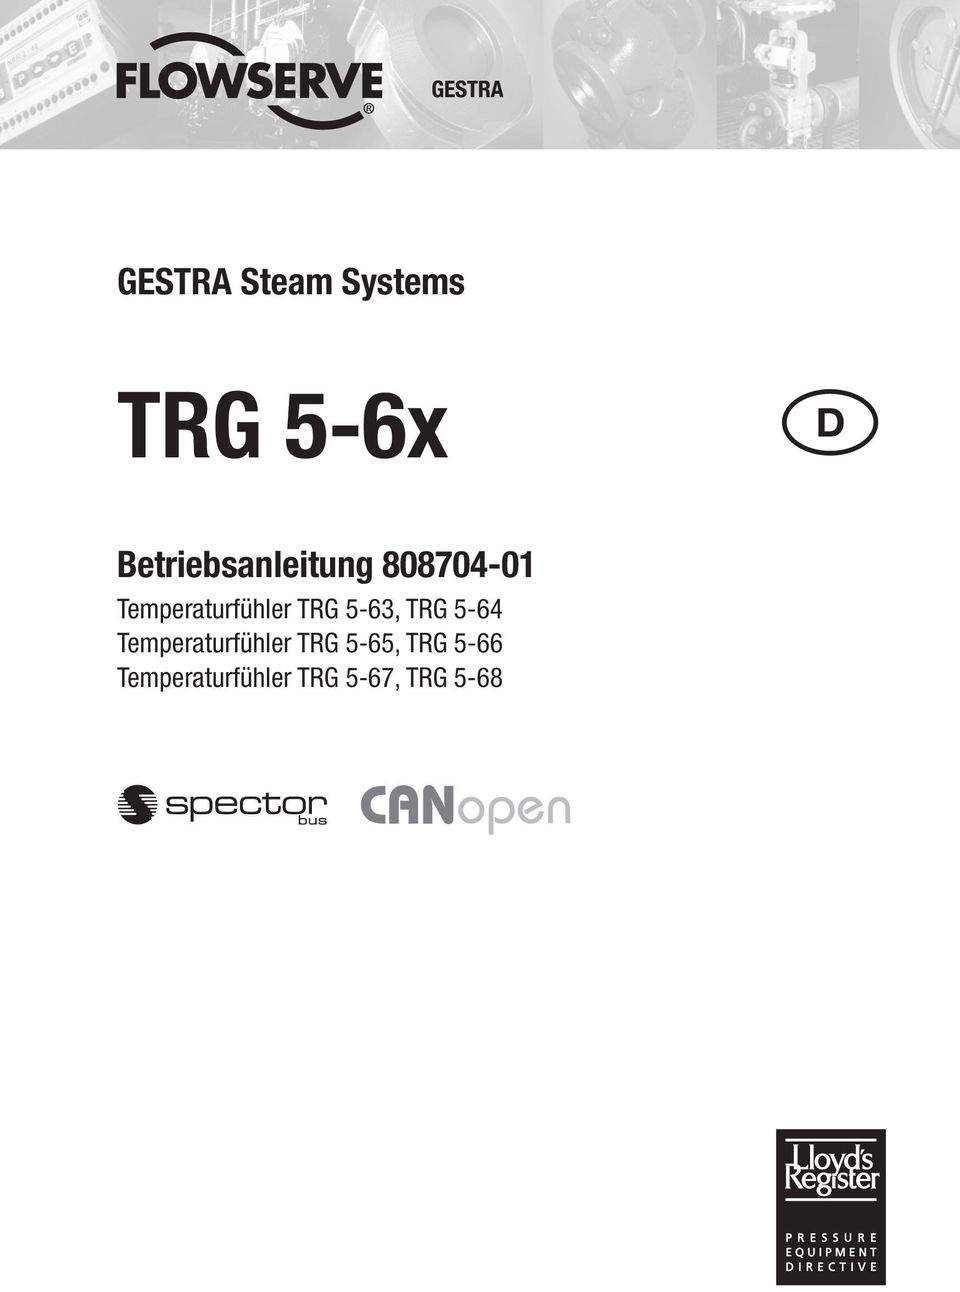 Temperaturfühler TRG 5-63, TRG 5-64